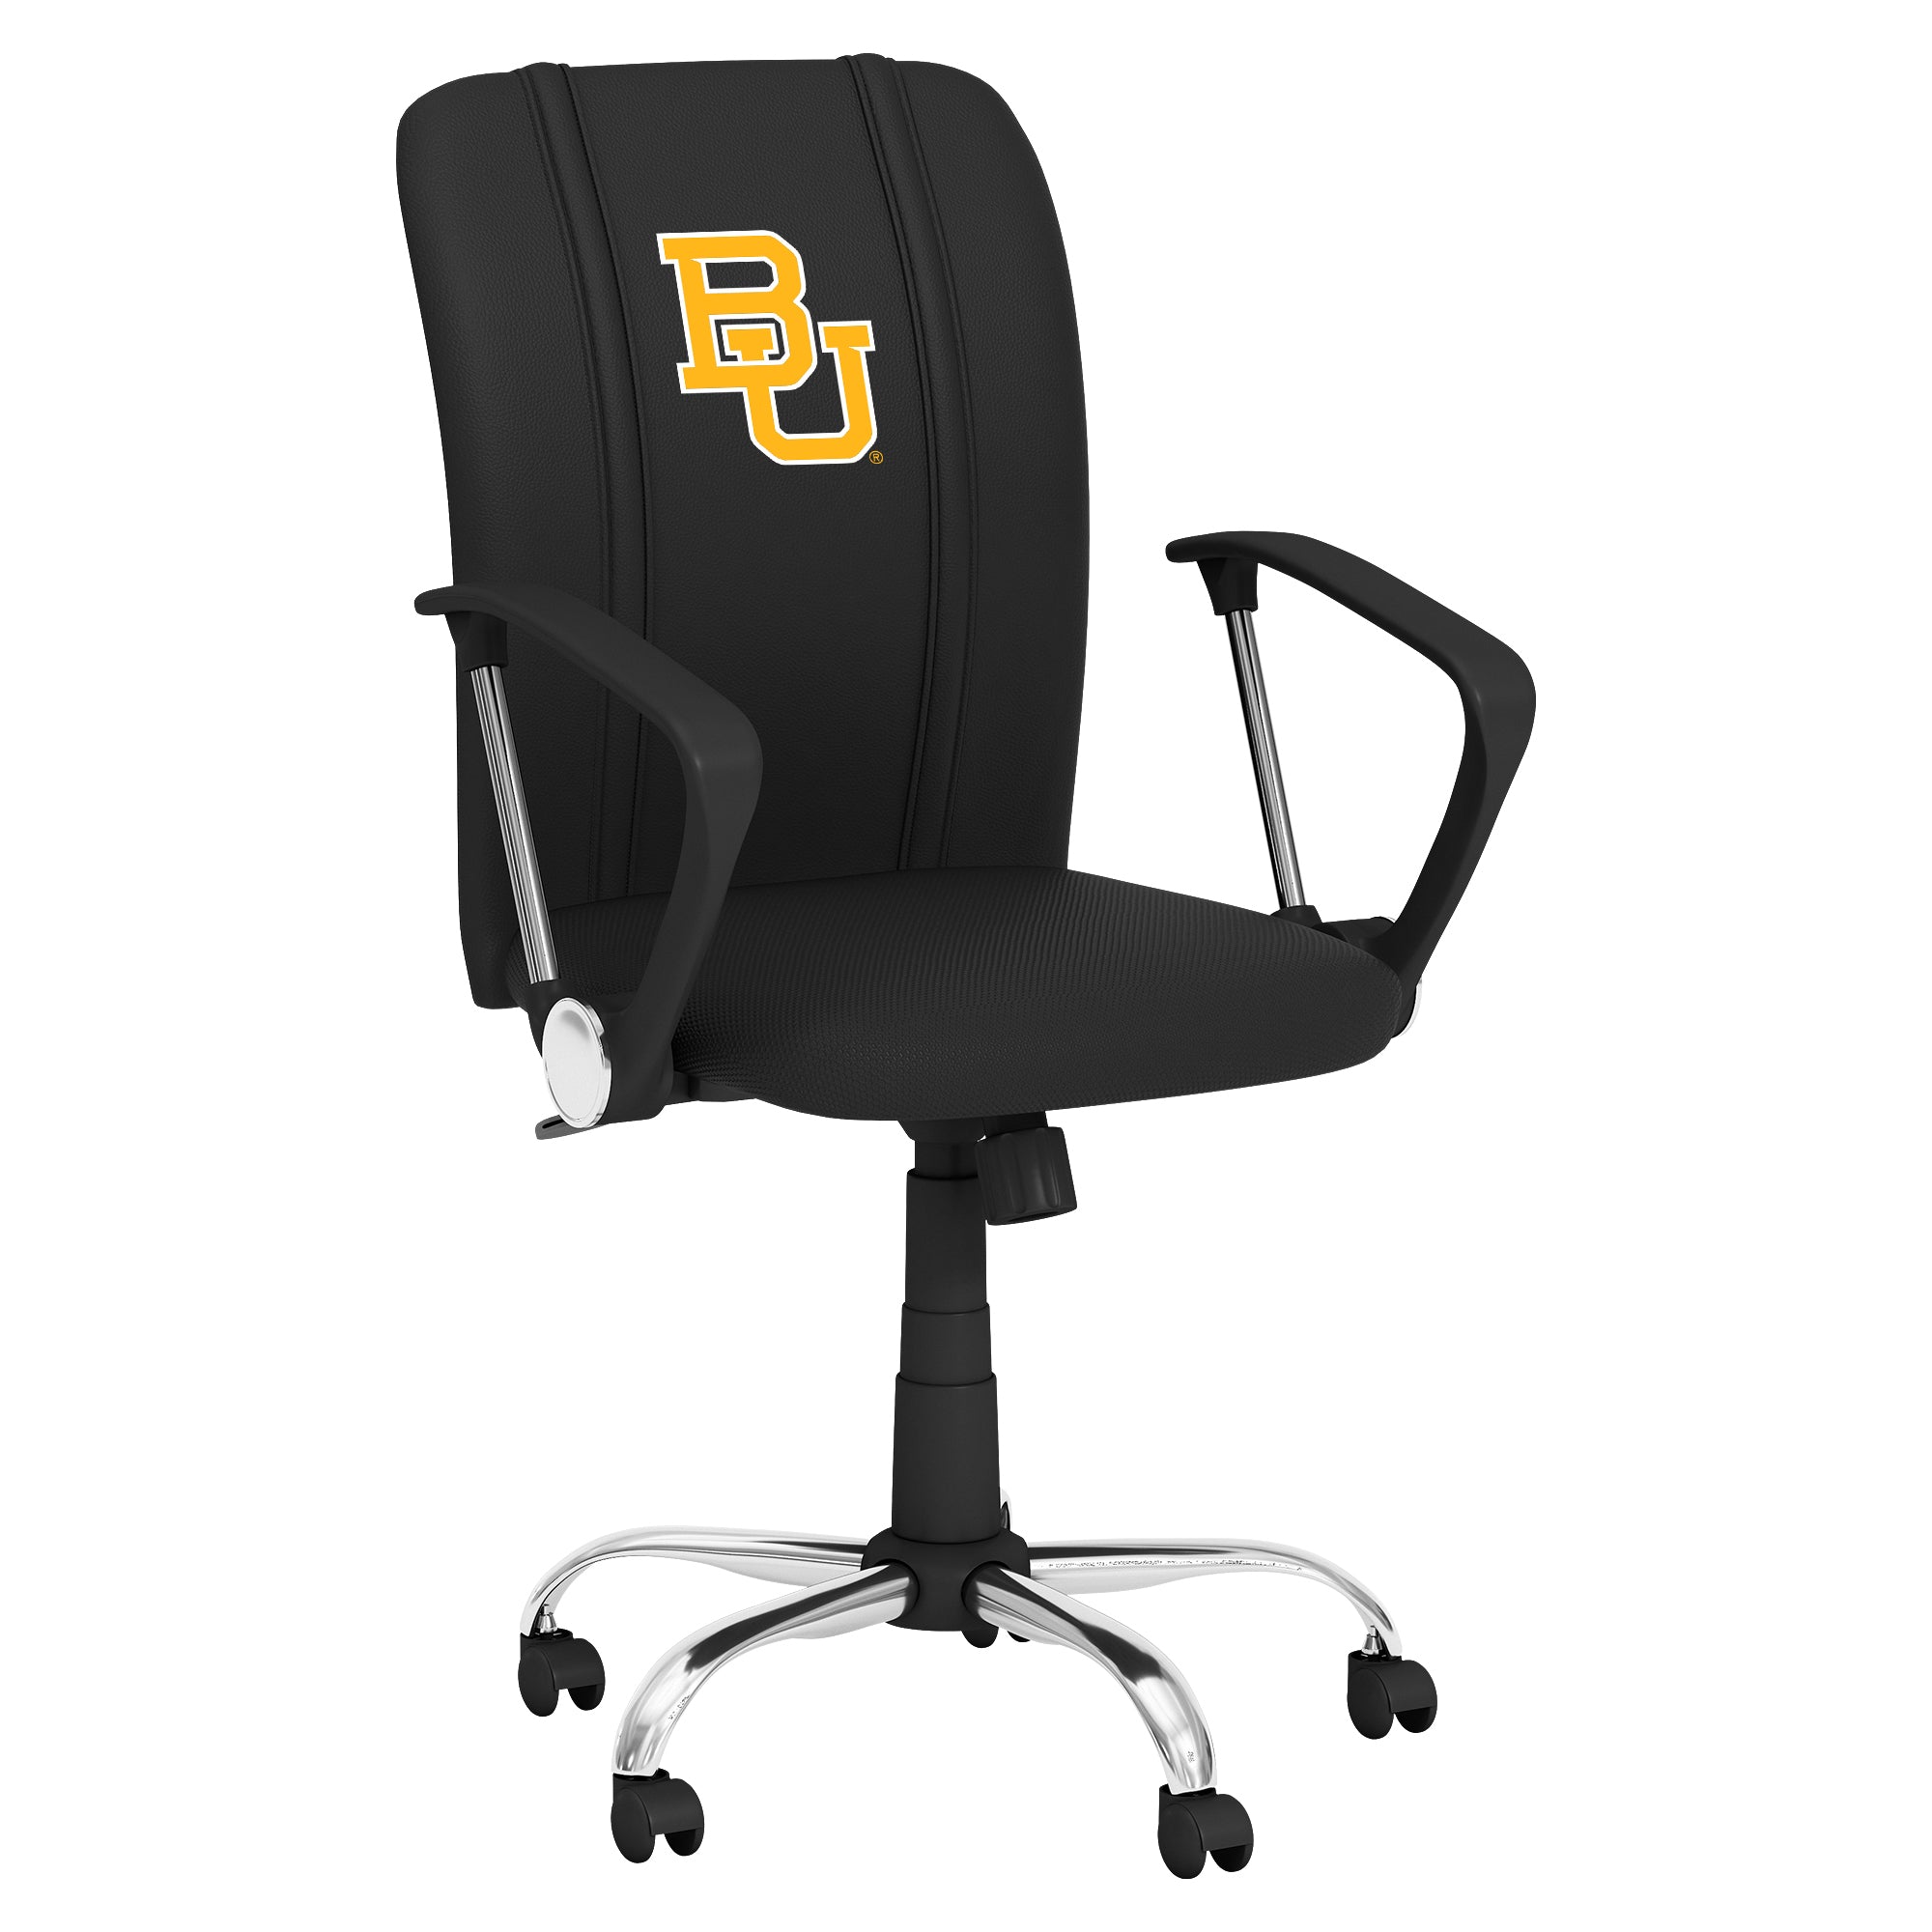 Baylor Bears Curve Task Chair with Baylor Bears Logo